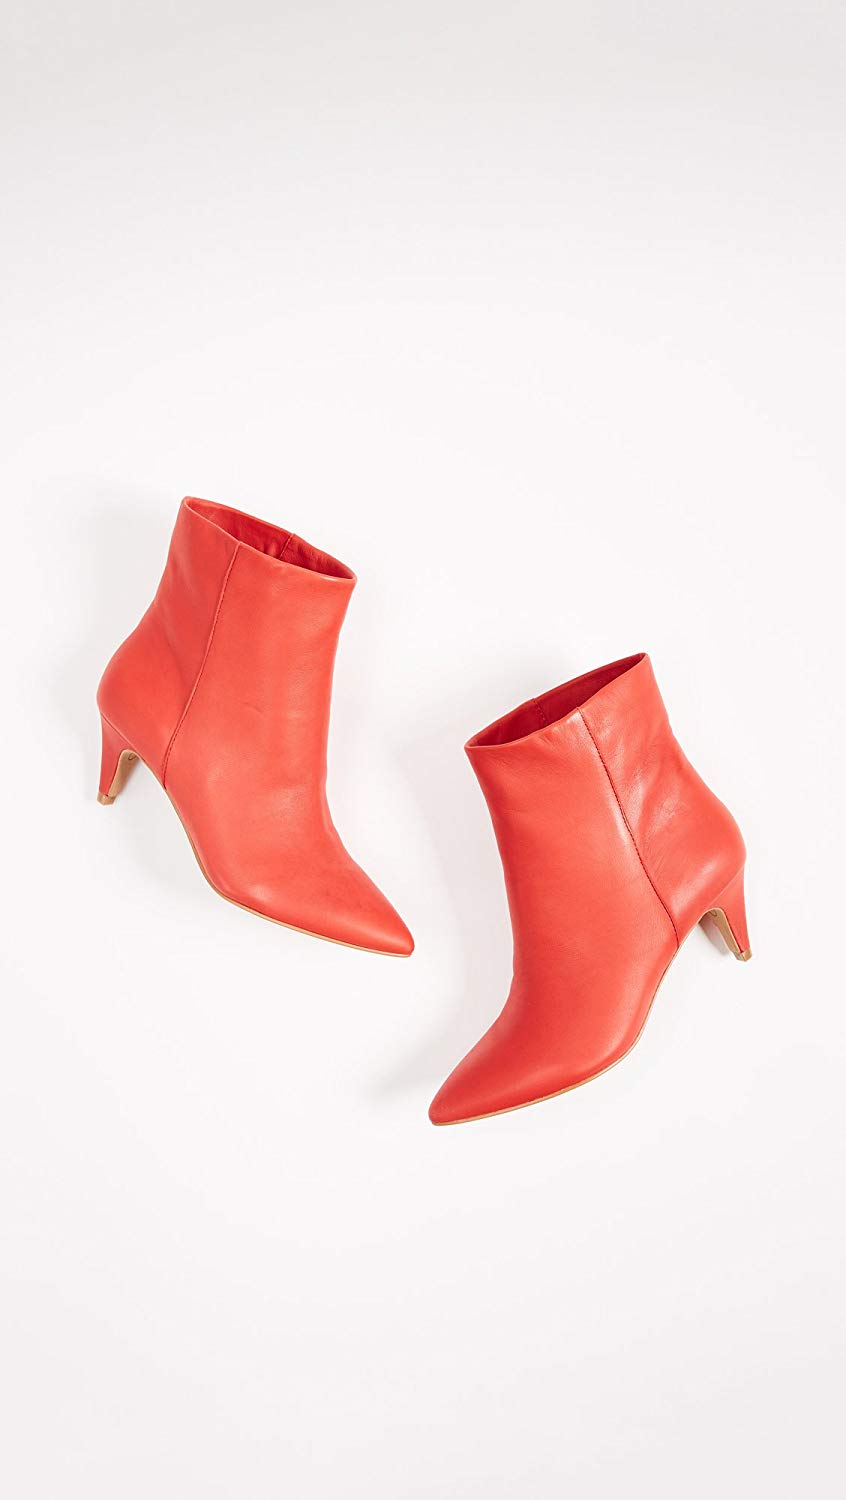 Dolce Vita Women's Dee Booties, Red, Size 6.0 gYsx | eBay